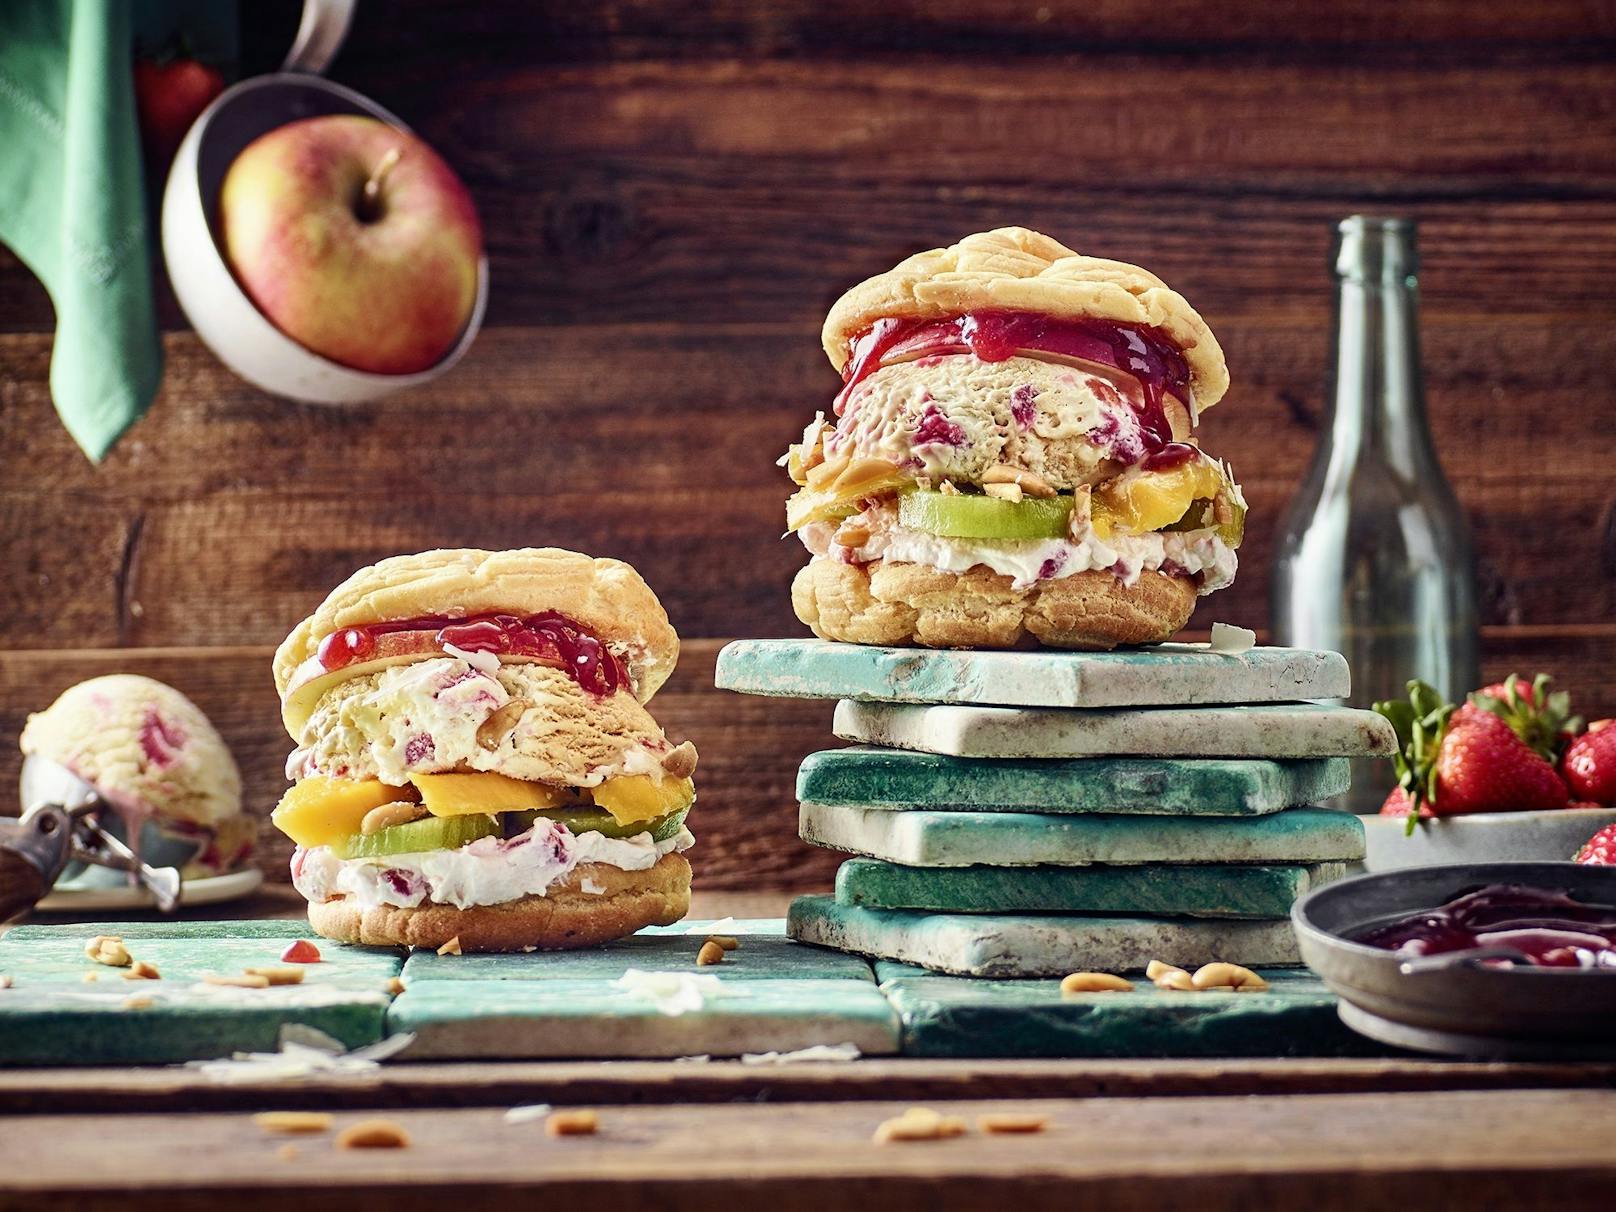 Wer liebt sie nicht: Burger! Cremissimo hat eine süße Variante kreiert, eine moderne Version der klassischen Brandteigkrapferl mit Obst &amp; Cremissimo Strawberry Cheesecake Eis.